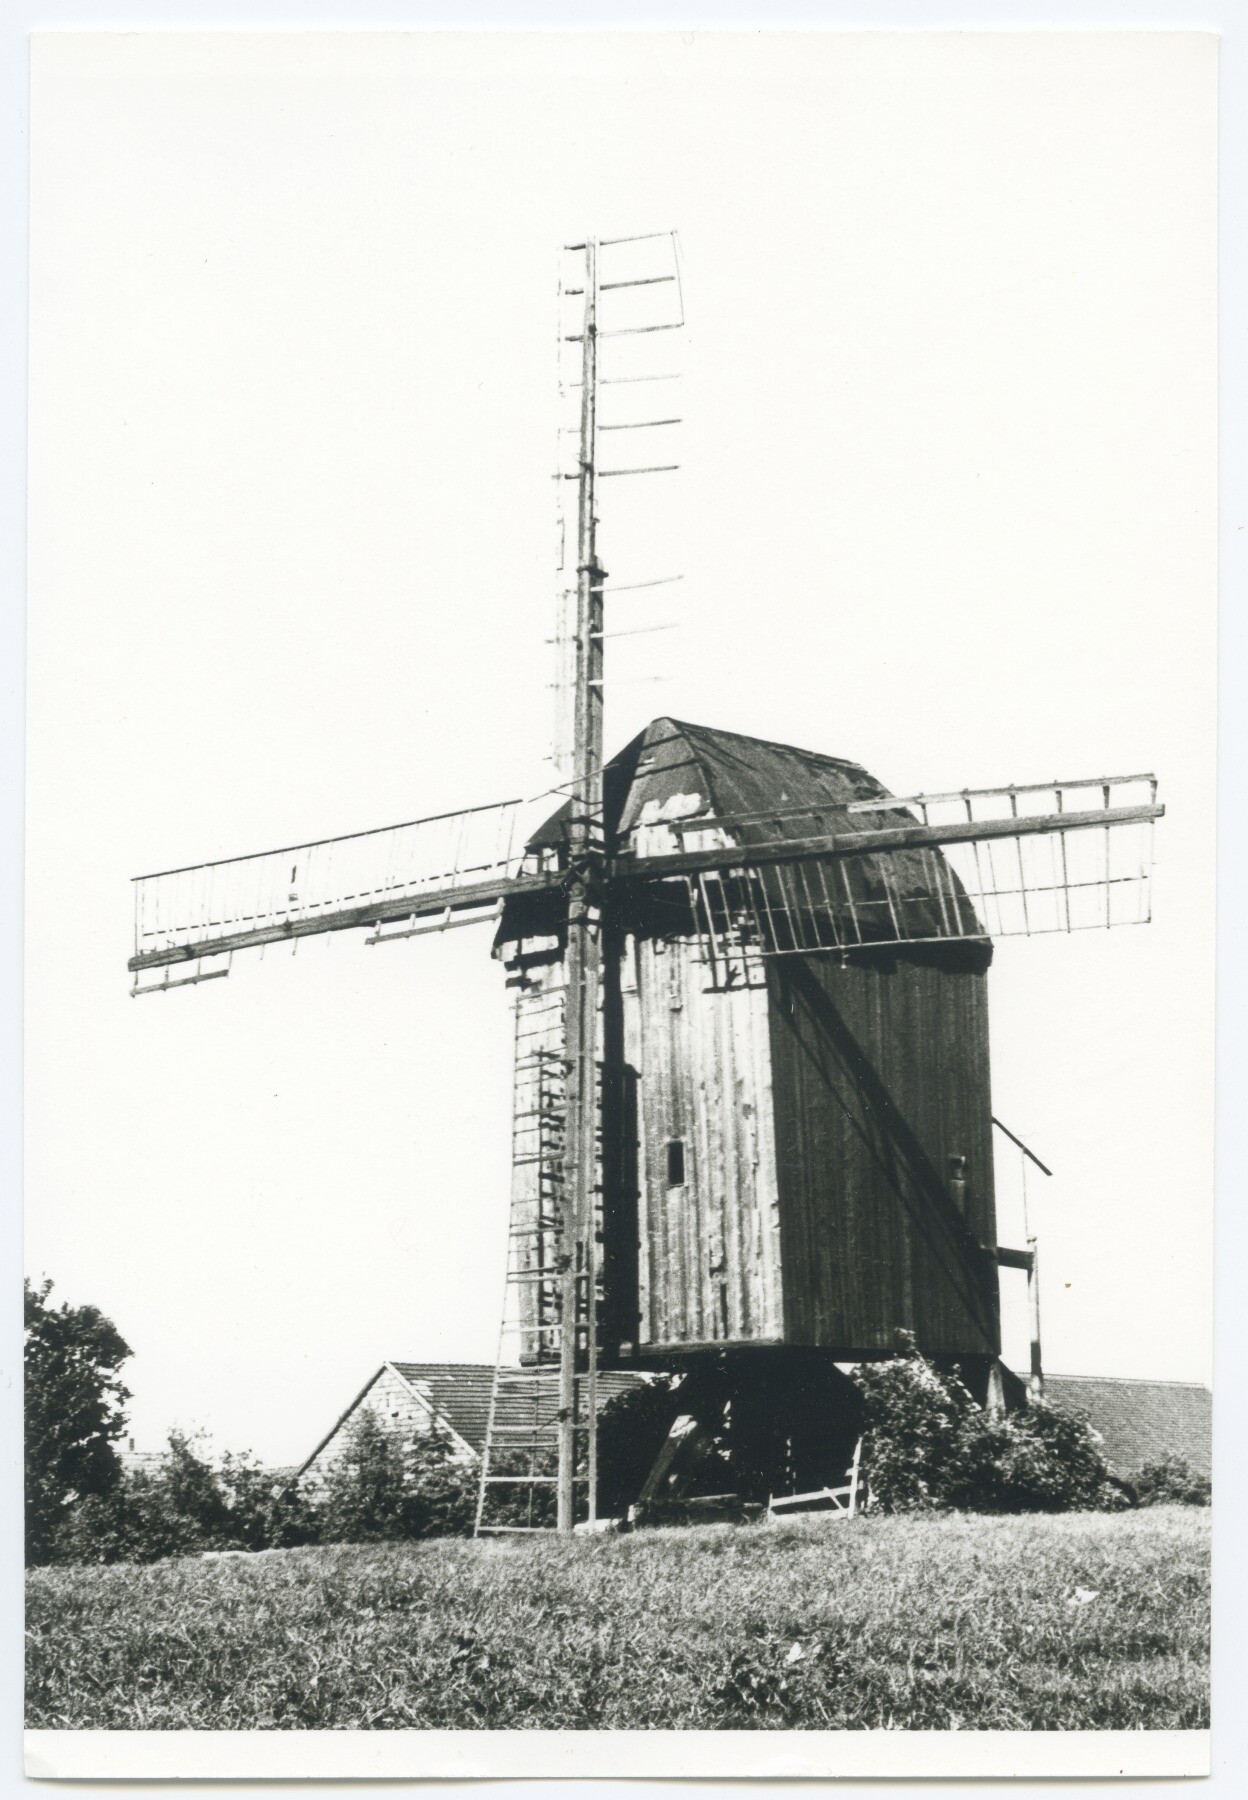 Bockwindmühle Kampe in Danstedt (Historische Mühle von Sanssouci CC BY-NC-ND)